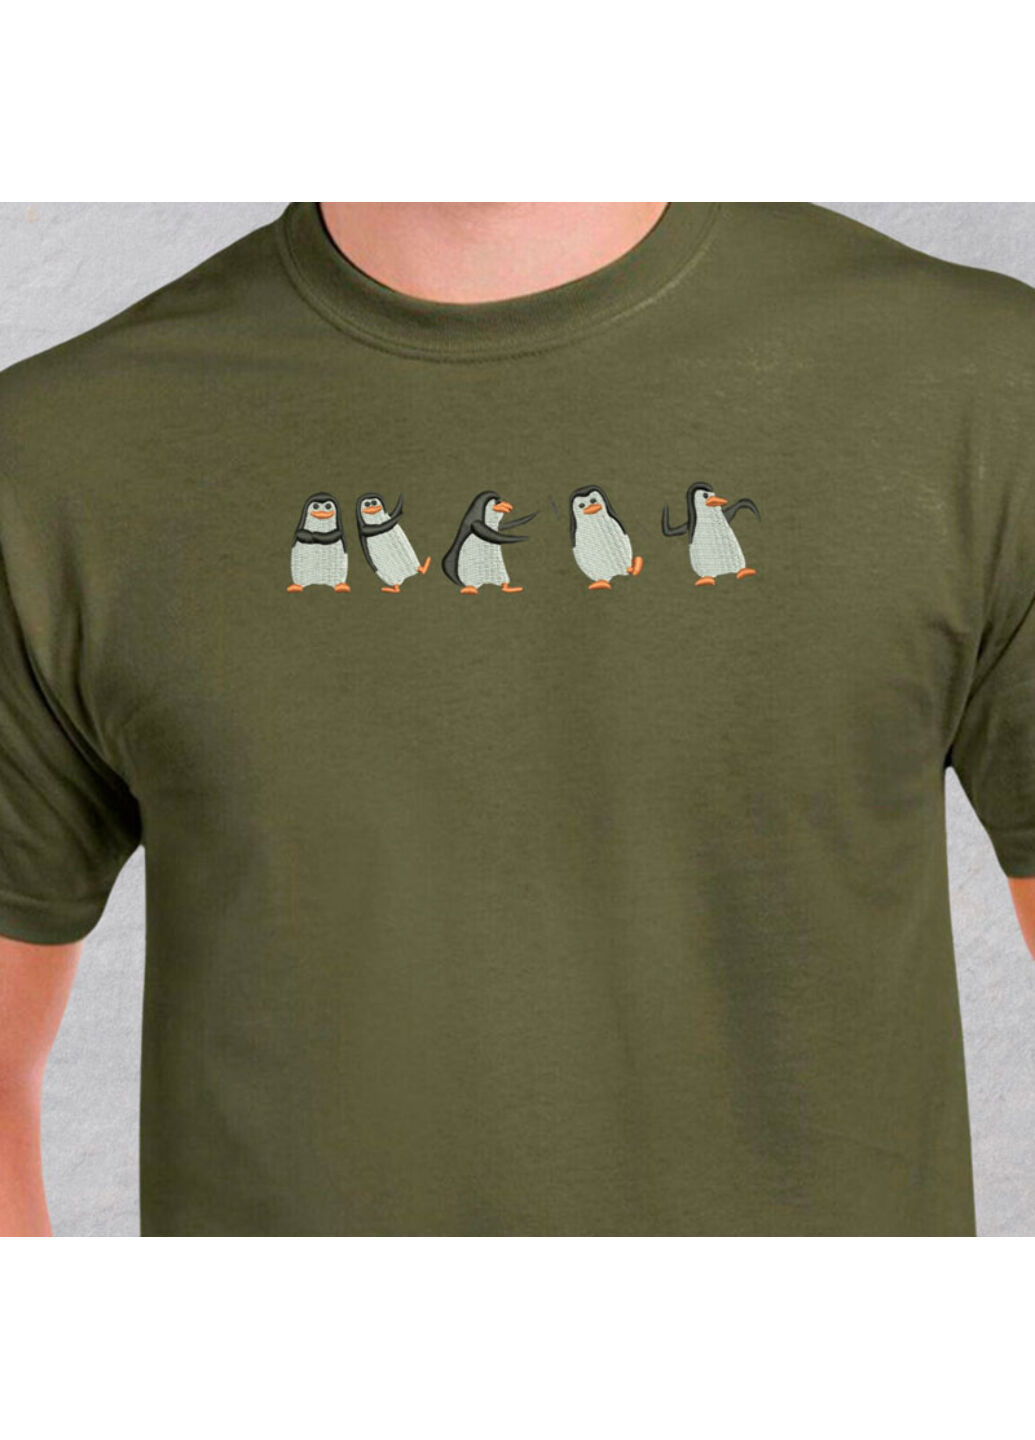 Хаки (оливковая) футболка с вышивкой пингвинов 01-4 мужская хаки xl No Brand